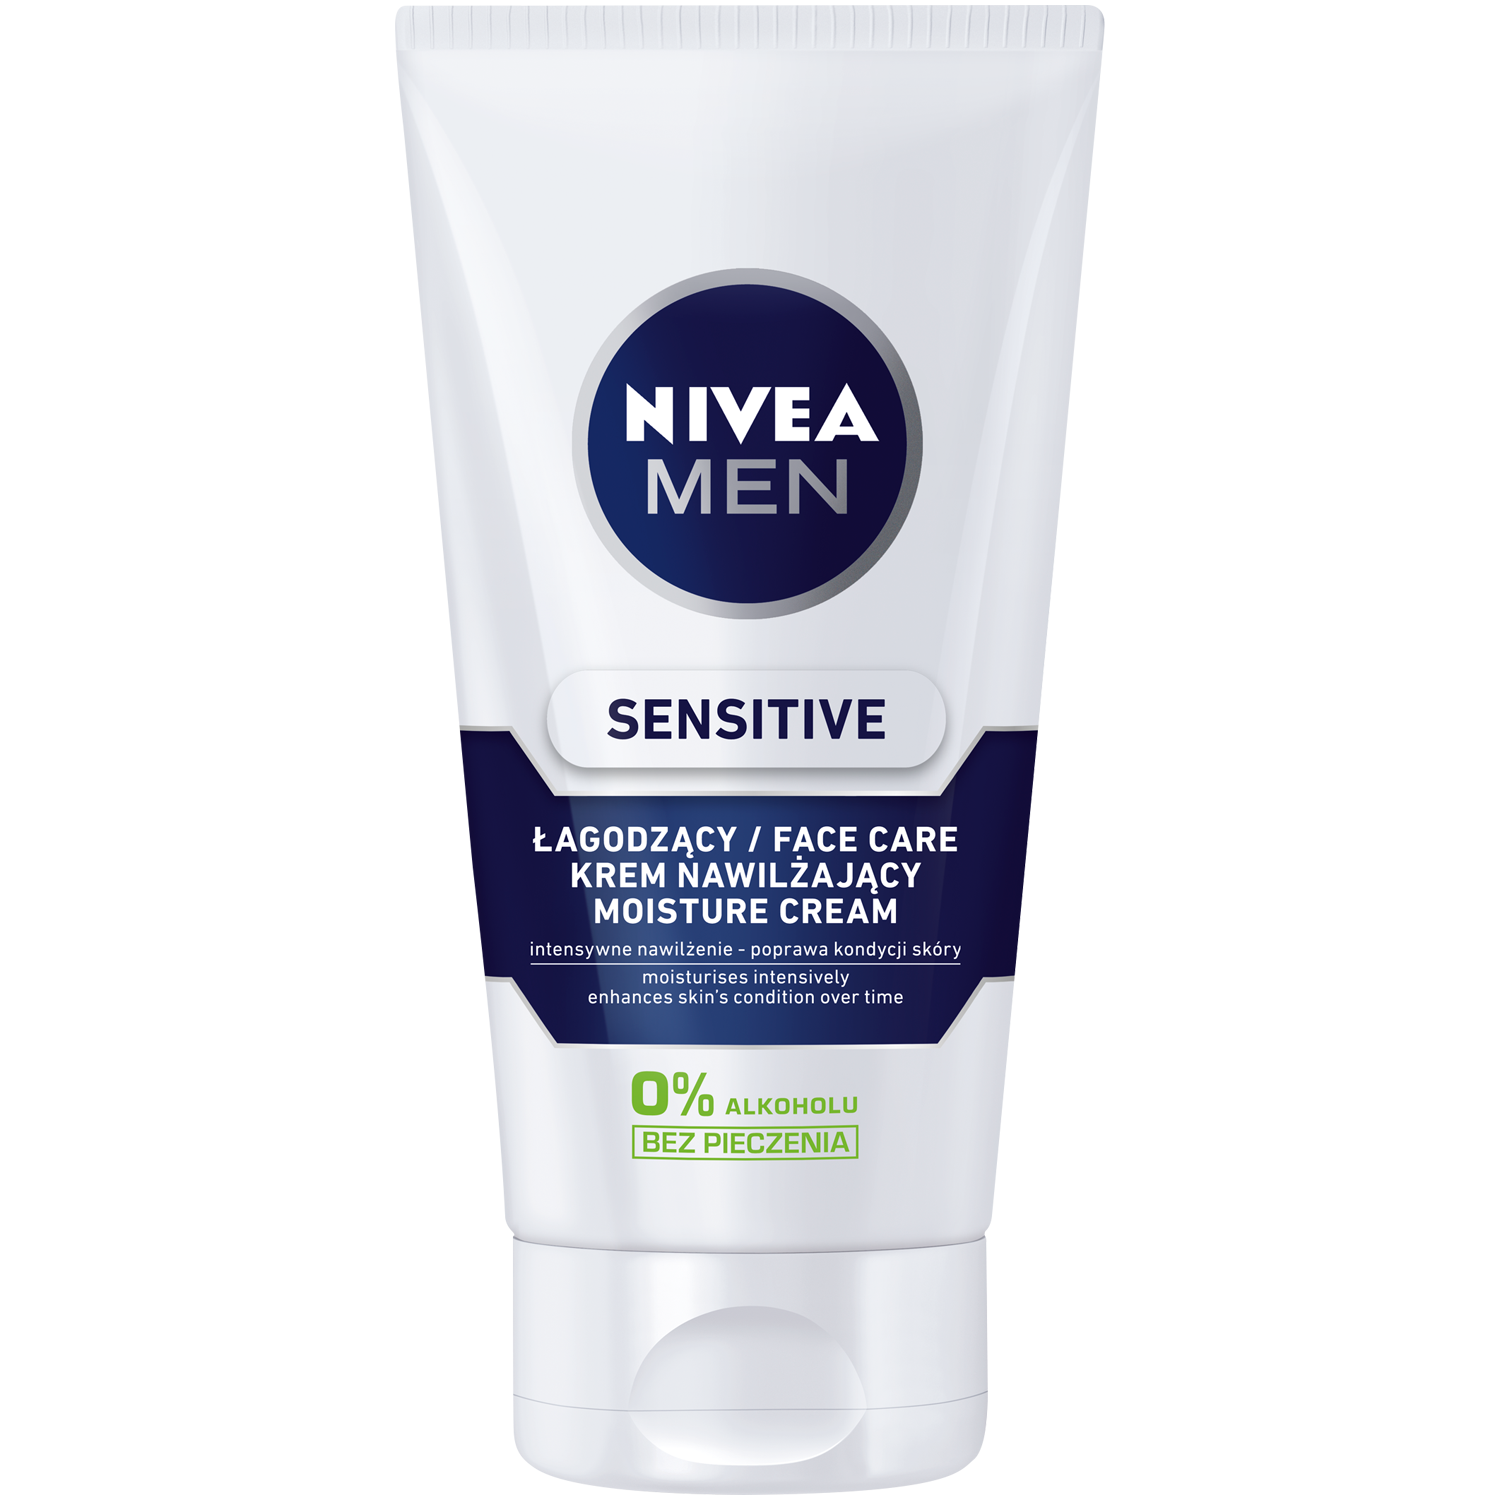 Nivea Men Sensitive успокаивающий увлажняющий крем для лица для мужчин, 75 мл защитный крем для лица spf 15 75 мл nivea men sensitive